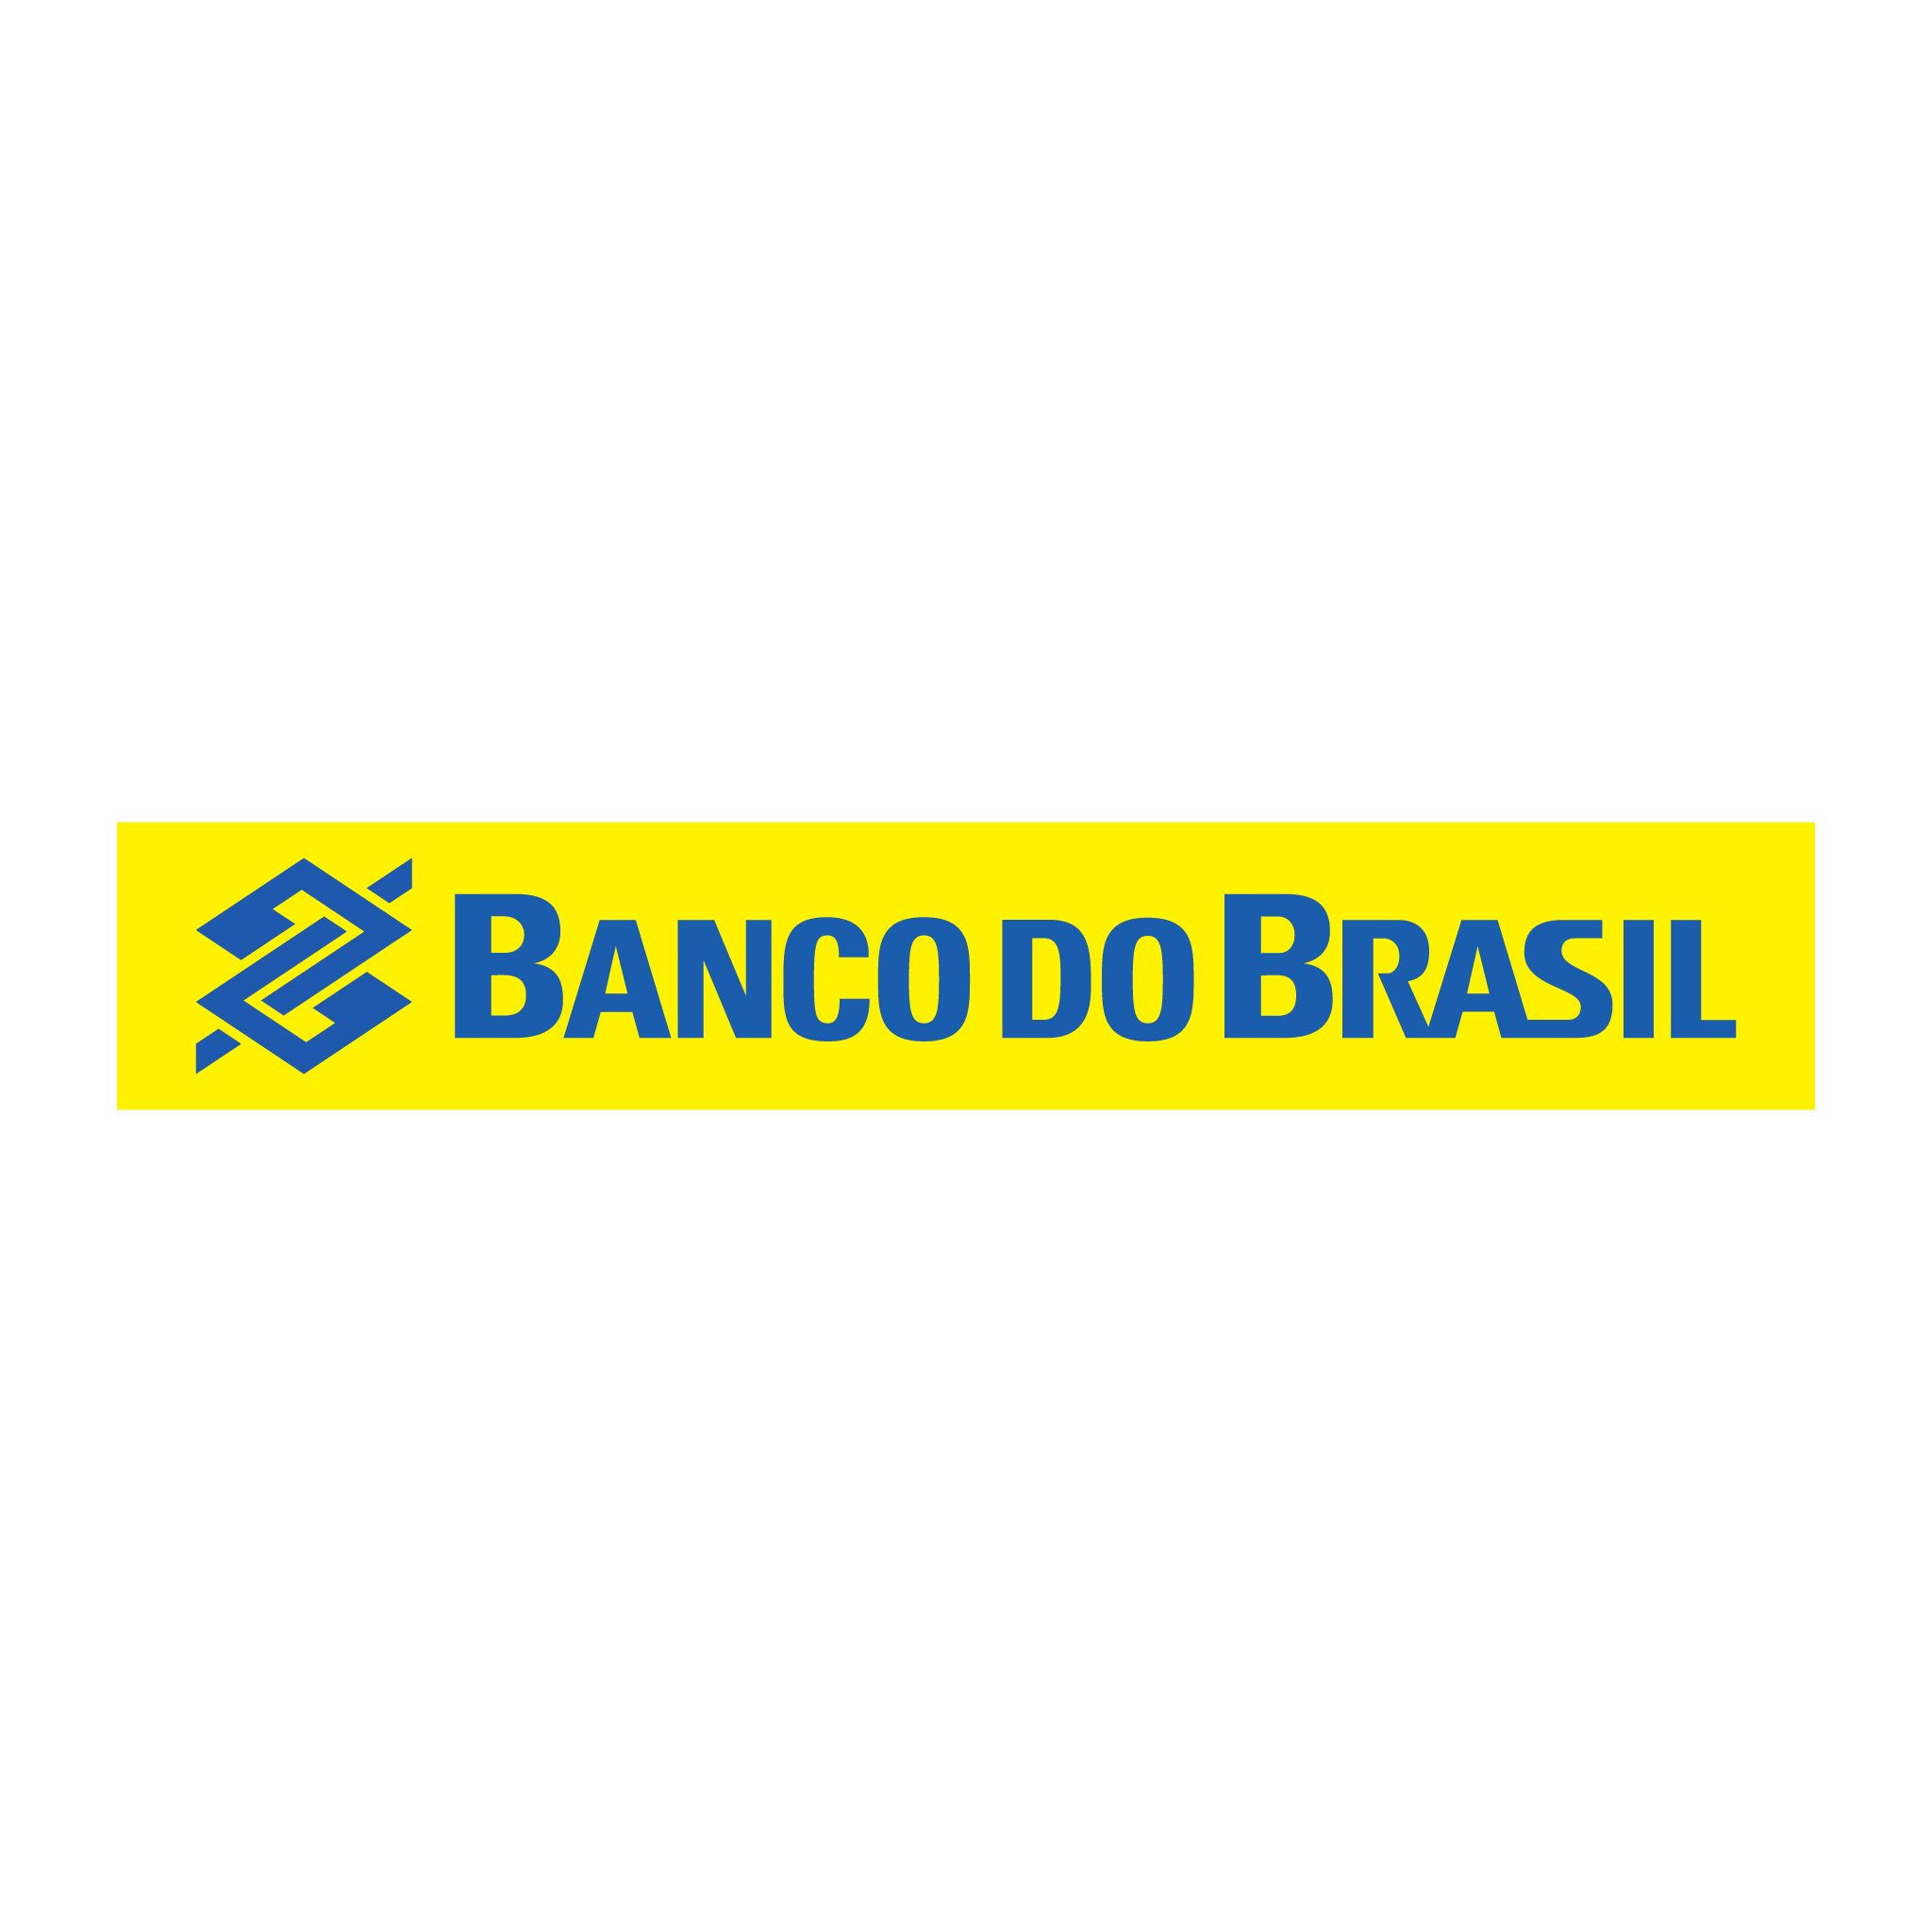 brasao do banco do brasil horizontal brasao